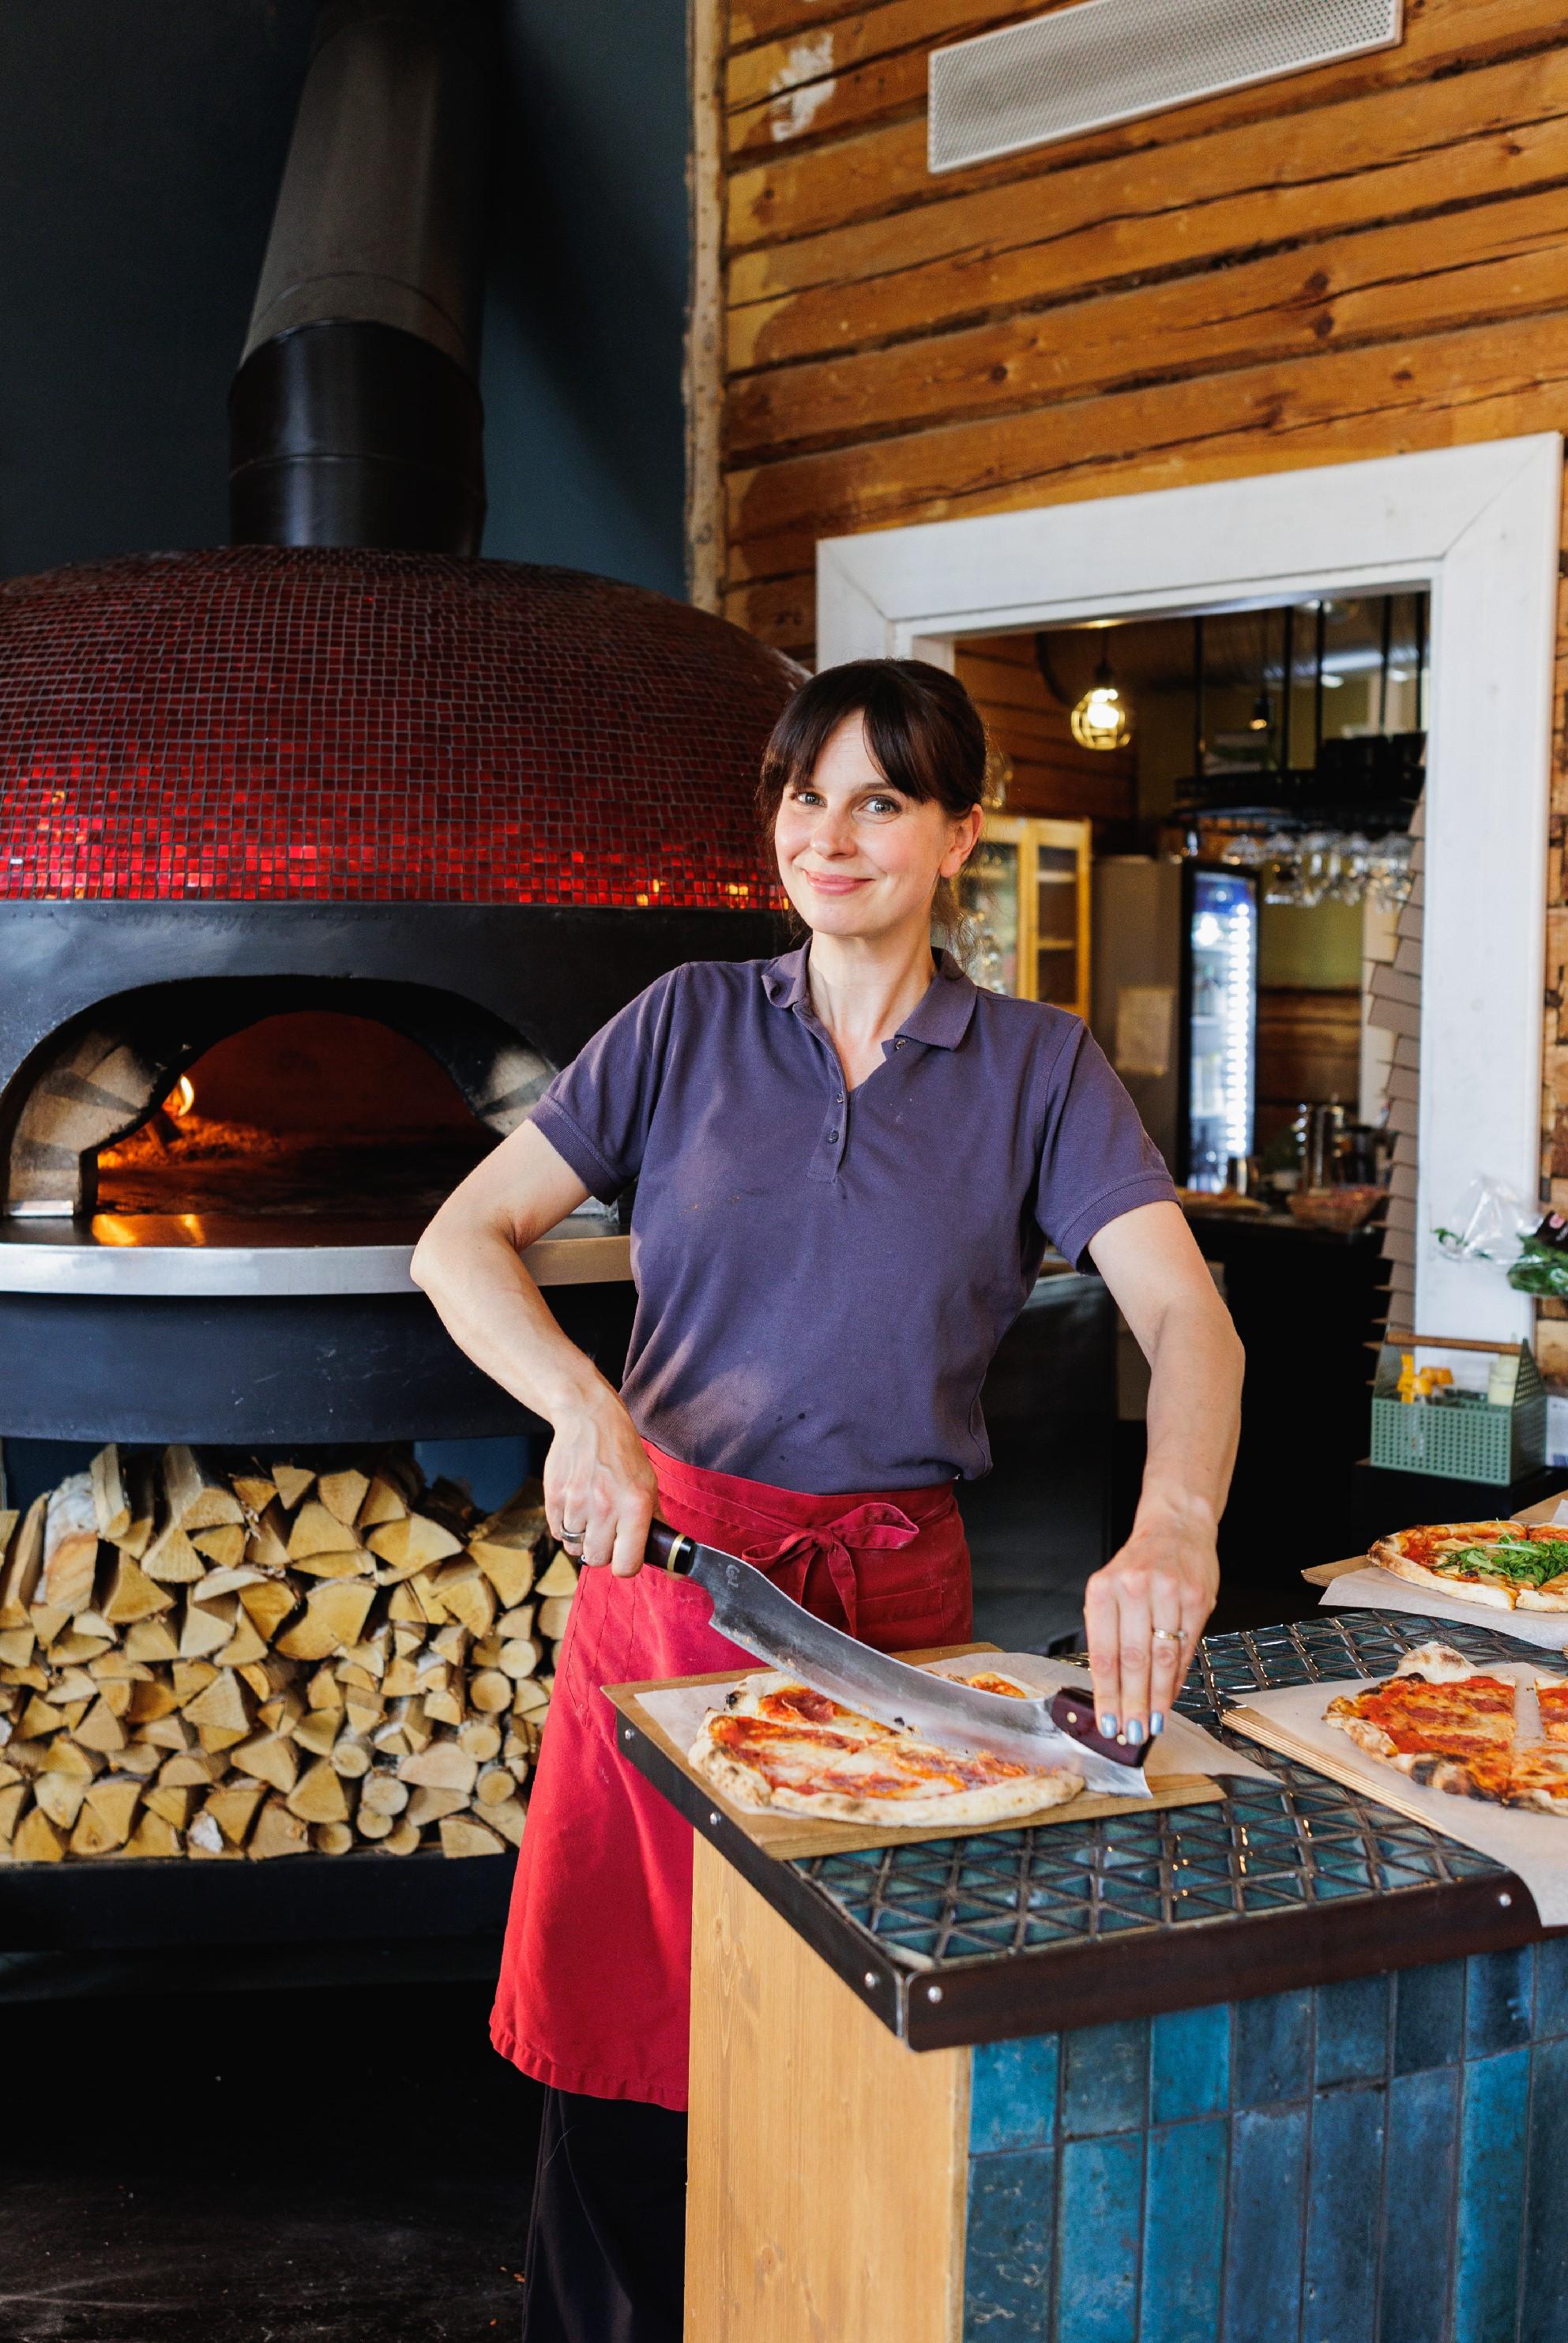 Näyttelijä-ravintoloitsija Olga Temonen leikkaa pizzaa suoraan kameraan katsoen Ravintola Rehtorin suuren punaisen pizzauunin edustalla.